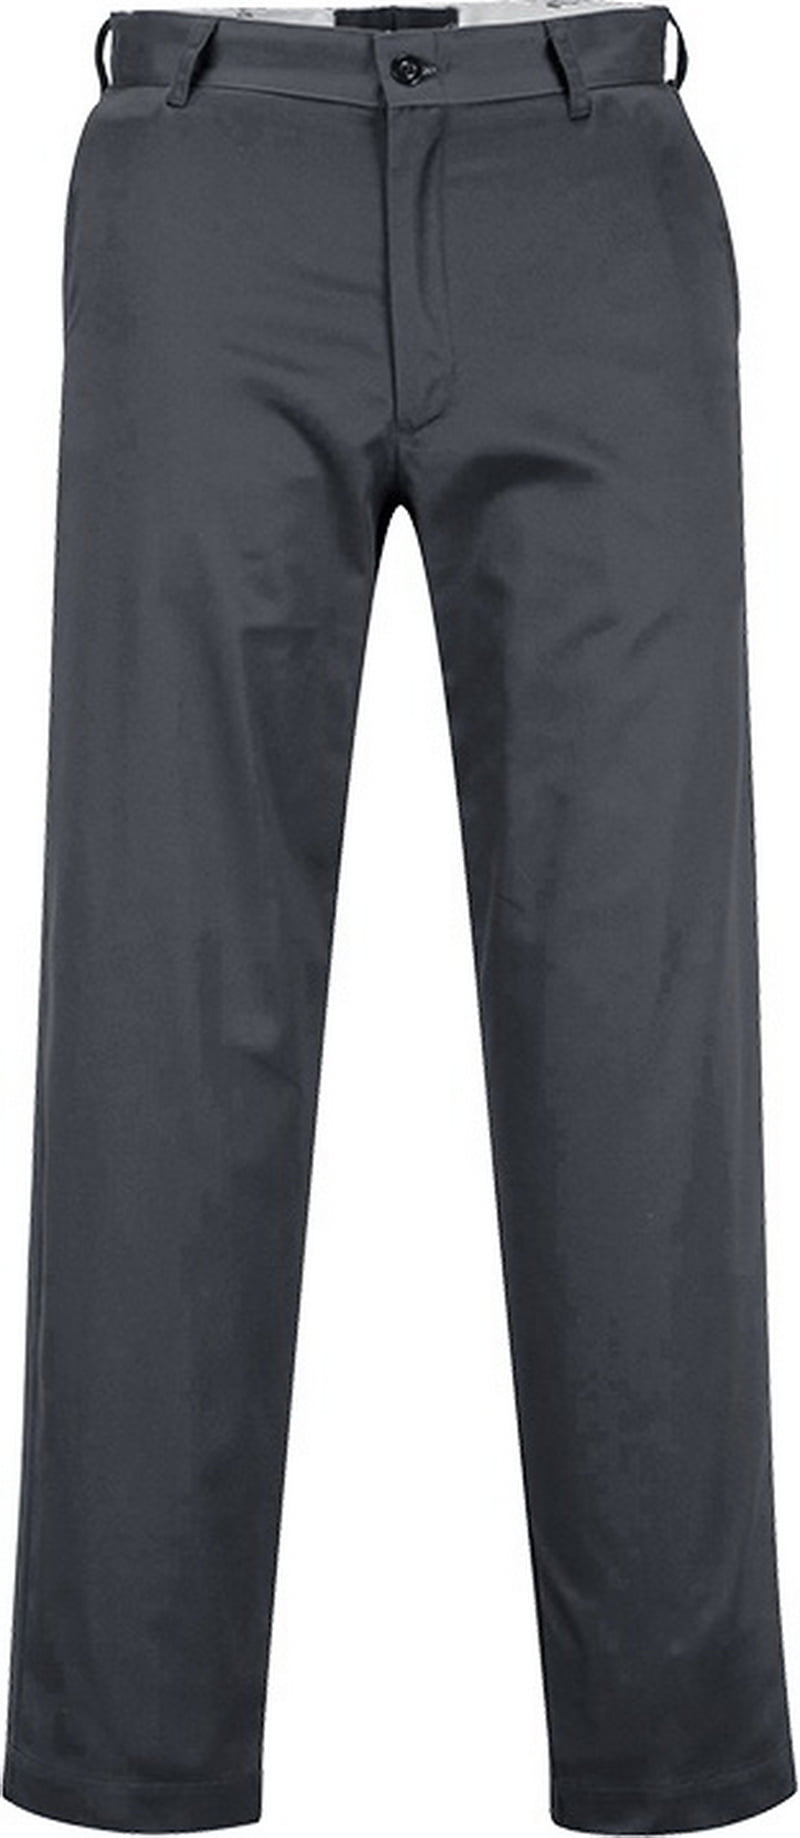 Portwest Combat Cargo Trousers C701 Uniform Multi Pocket Kingsmill Work Pants 